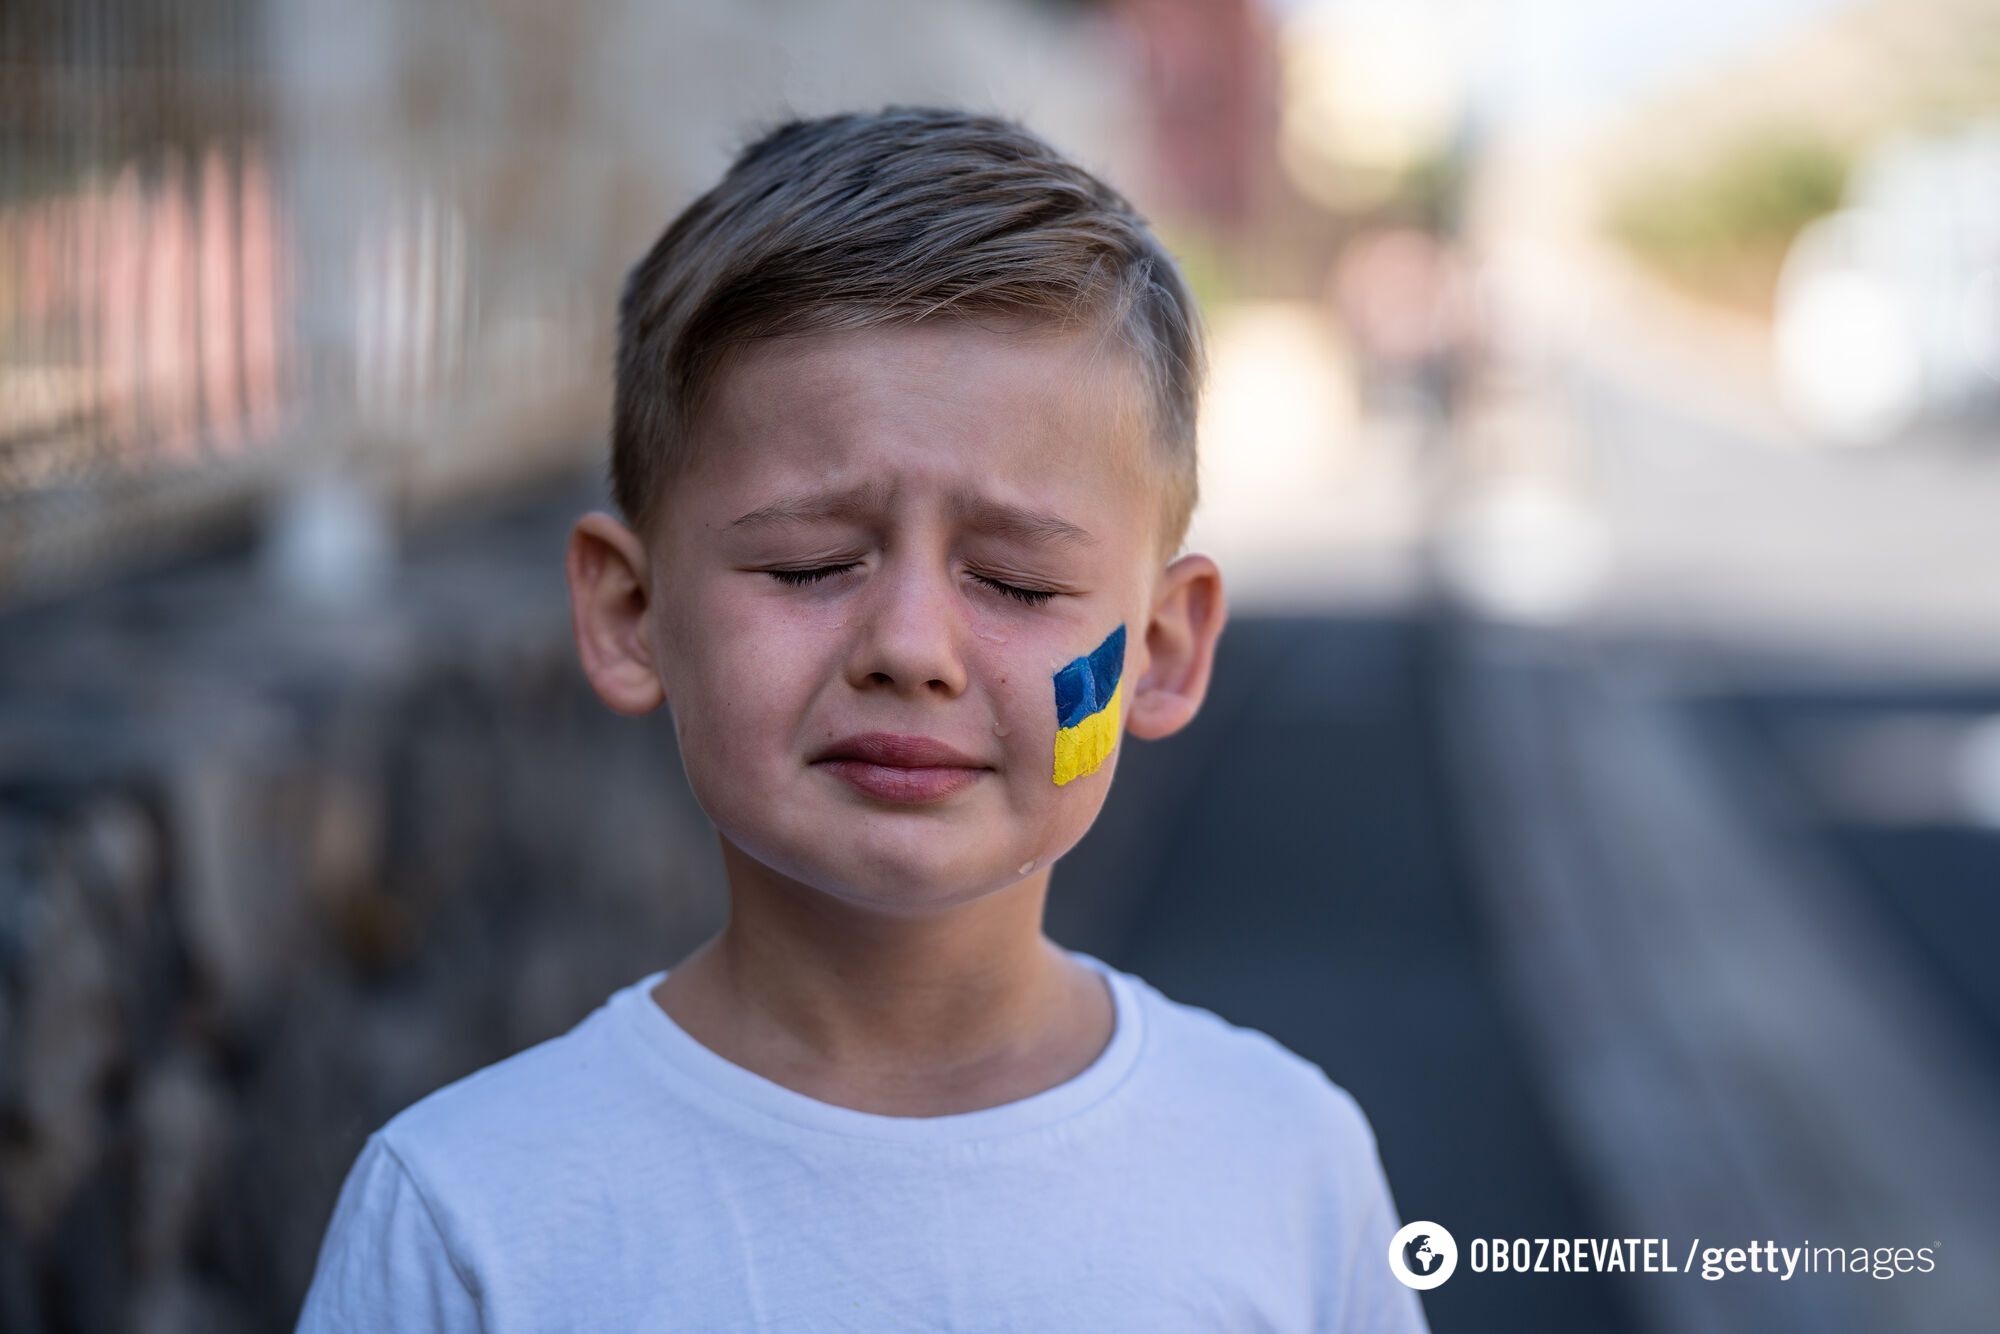 Dzieci powinny mieć prawo do płaczu